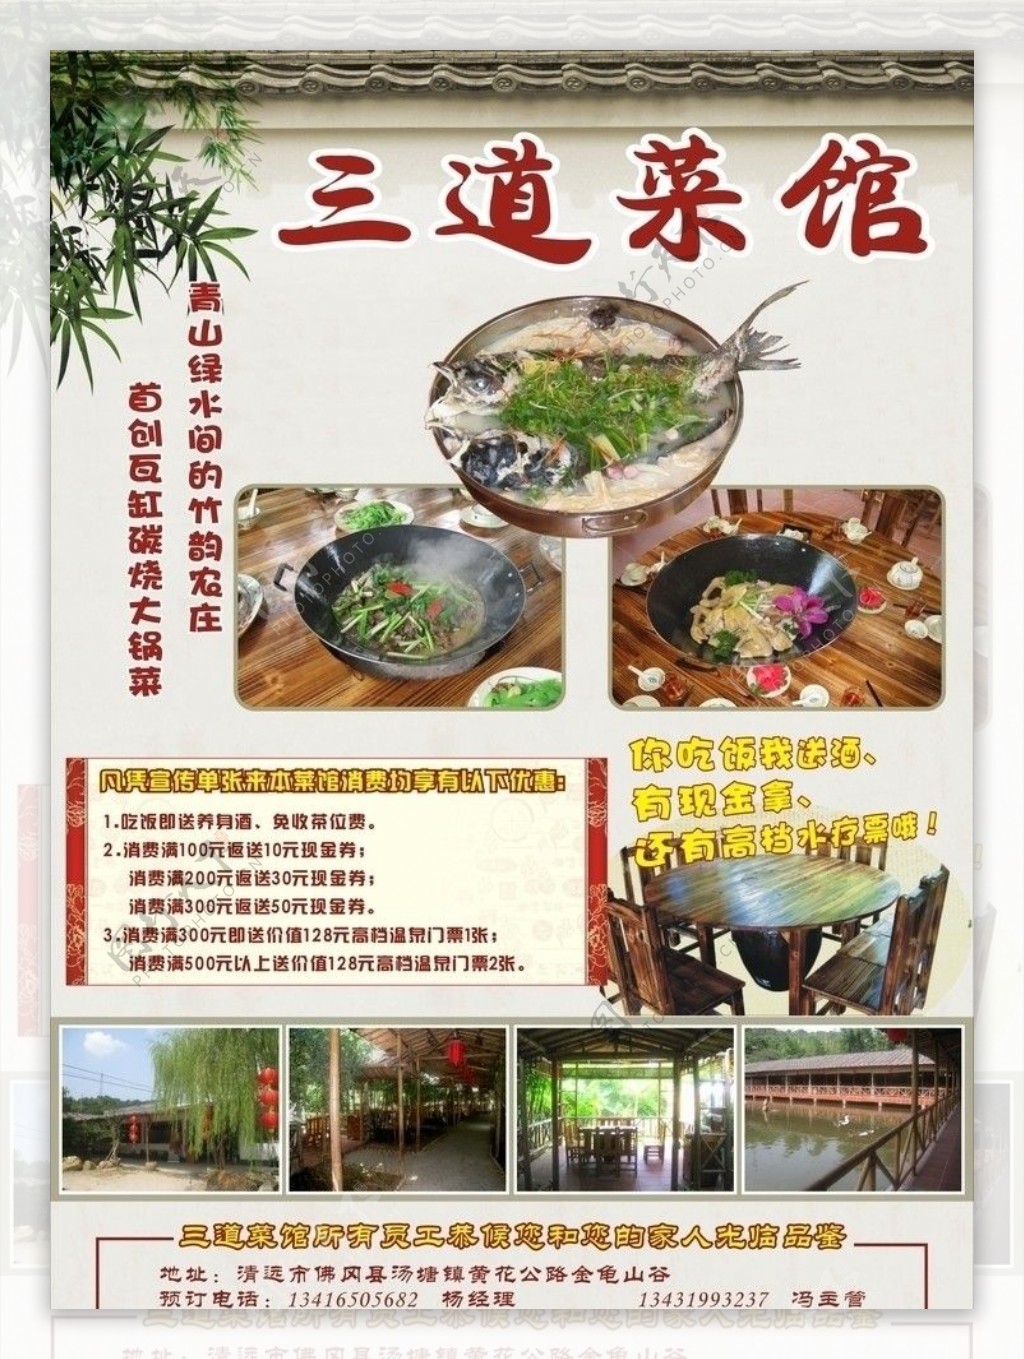 金龟泉三道菜馆菜单宣传图片